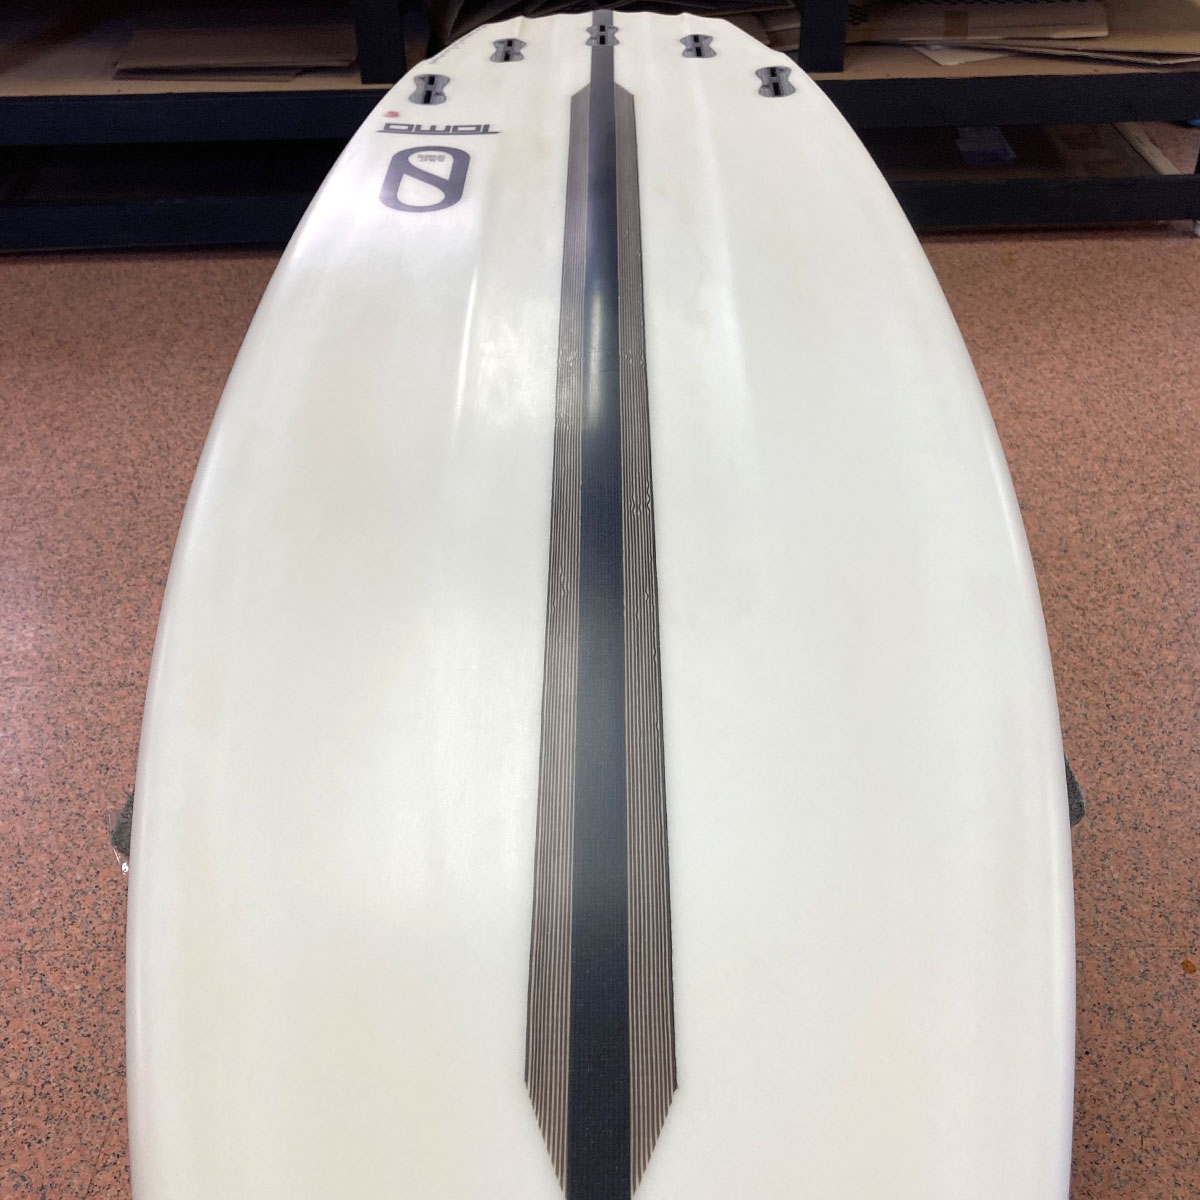 中古ボード サーフボード サーフィン USED SURFBOAR【used280】FIREWIRE Surfboards Sci-Fi 2.0  ファイヤーワイヤー サーフボード サイファイ 6'3 x 20' 7/8 x 2' 7/8 【40.8L】-ジャックオーシャンスポーツ